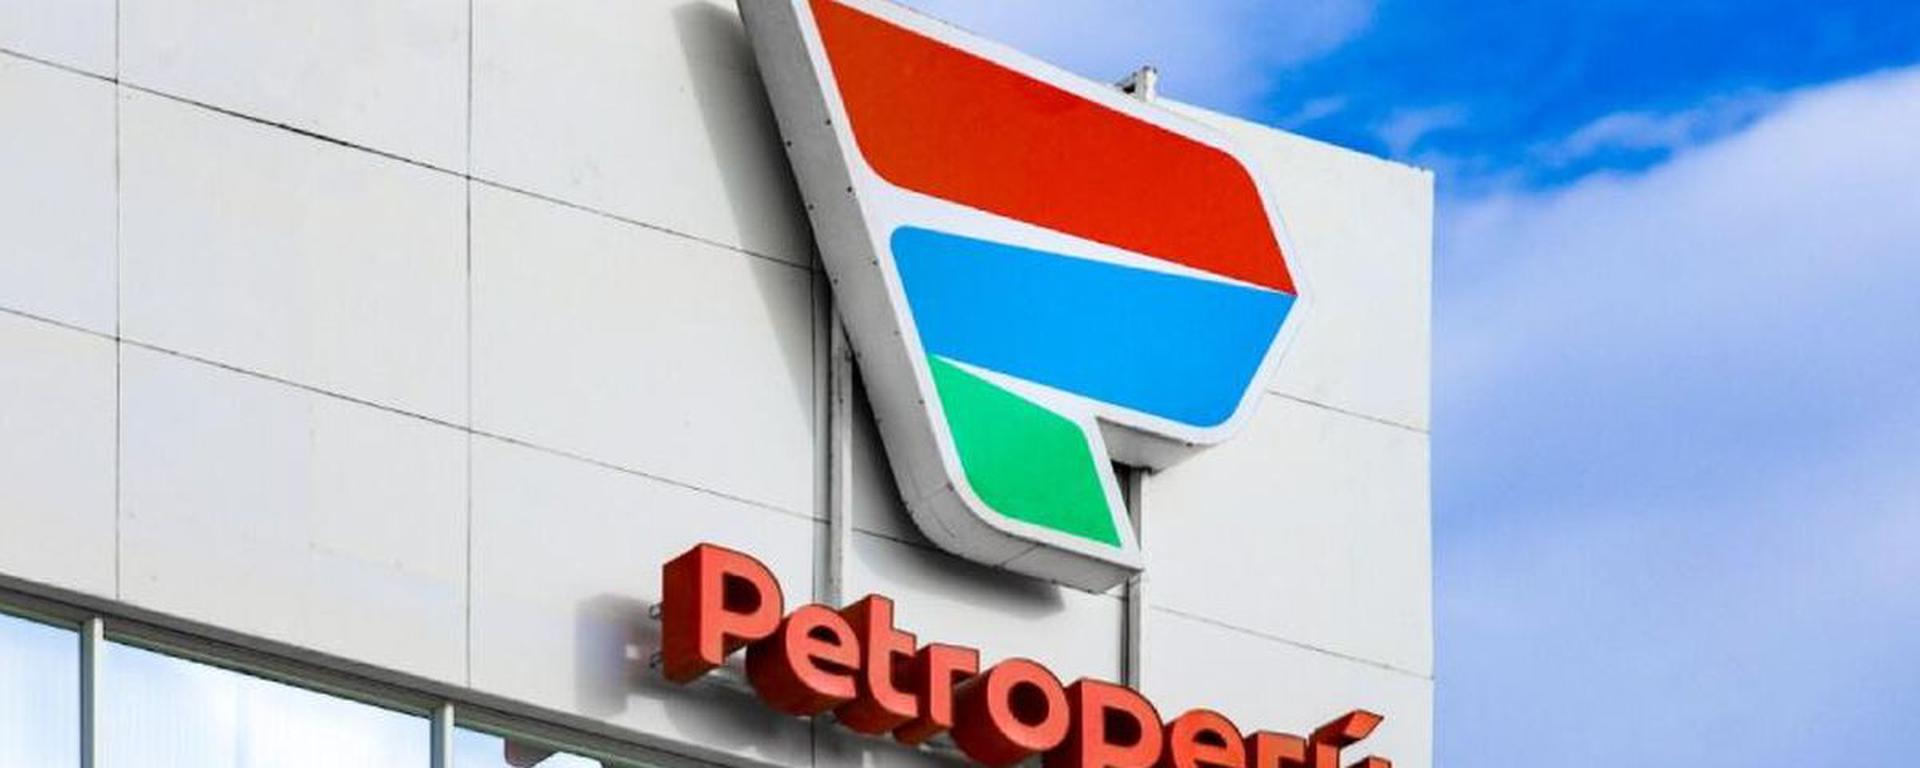 Movidas en Petro-Perú: ¿La reestructuración de la petrolera estatal va en serio?